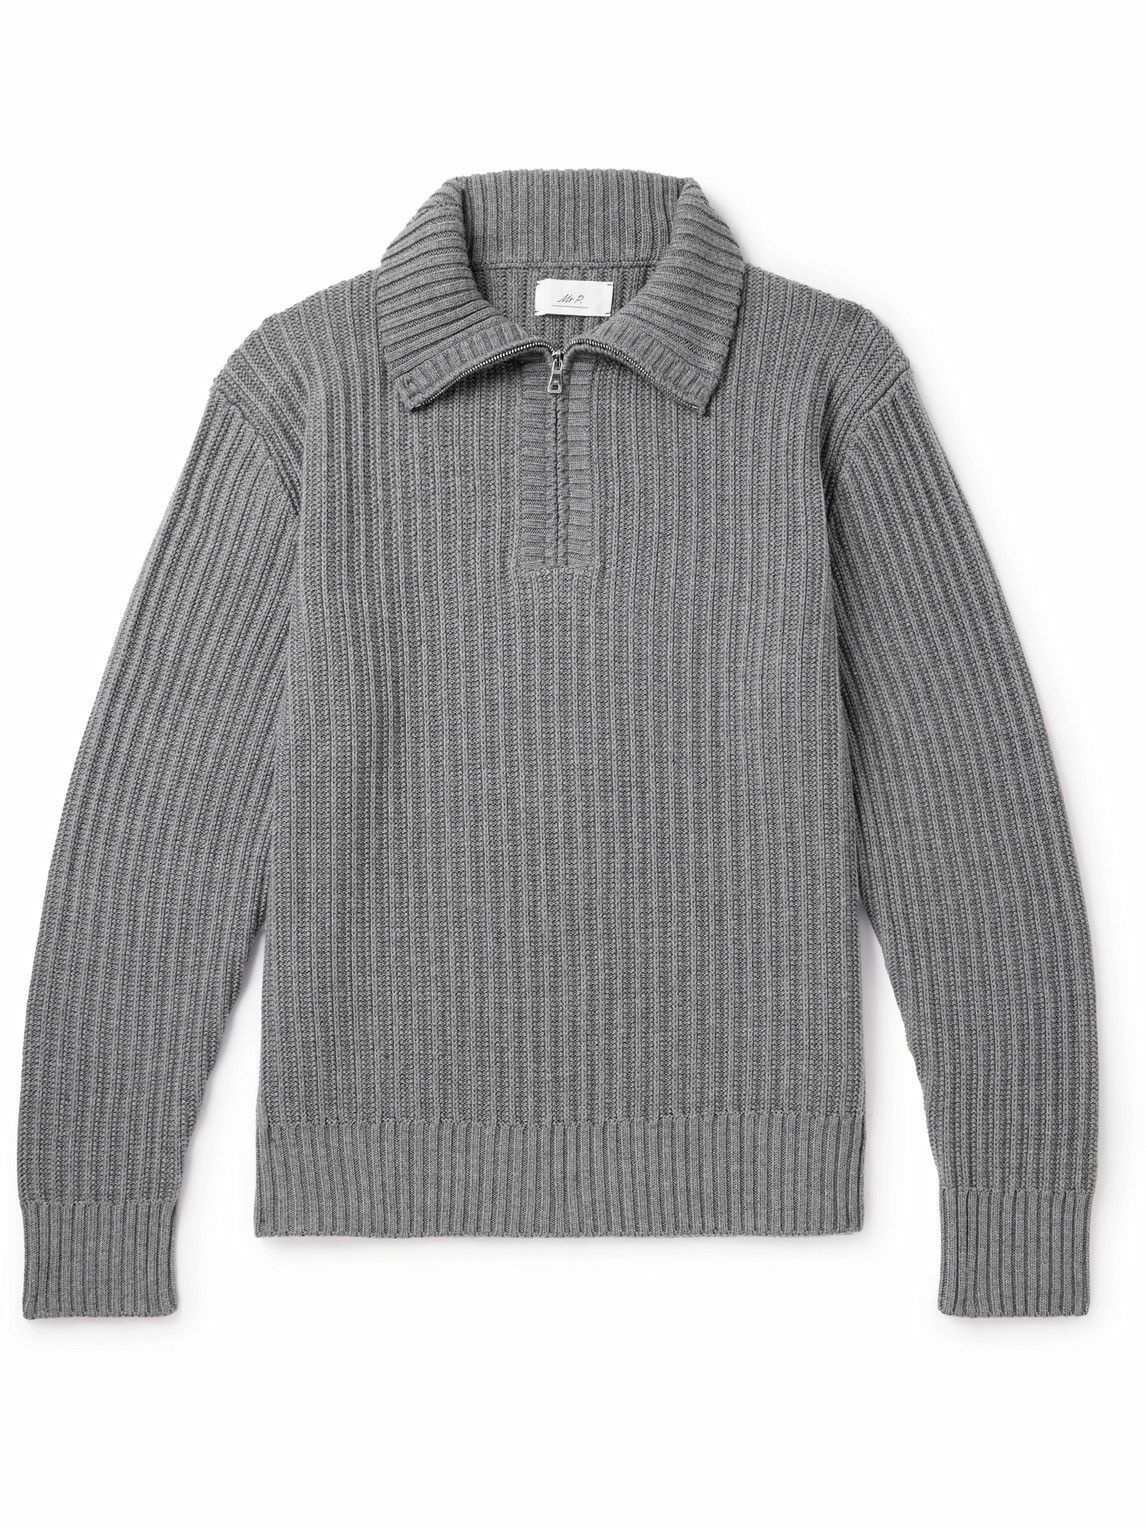 Photo: Mr P. - Ribbed Merino Wool Half-Zip Sweater - Gray